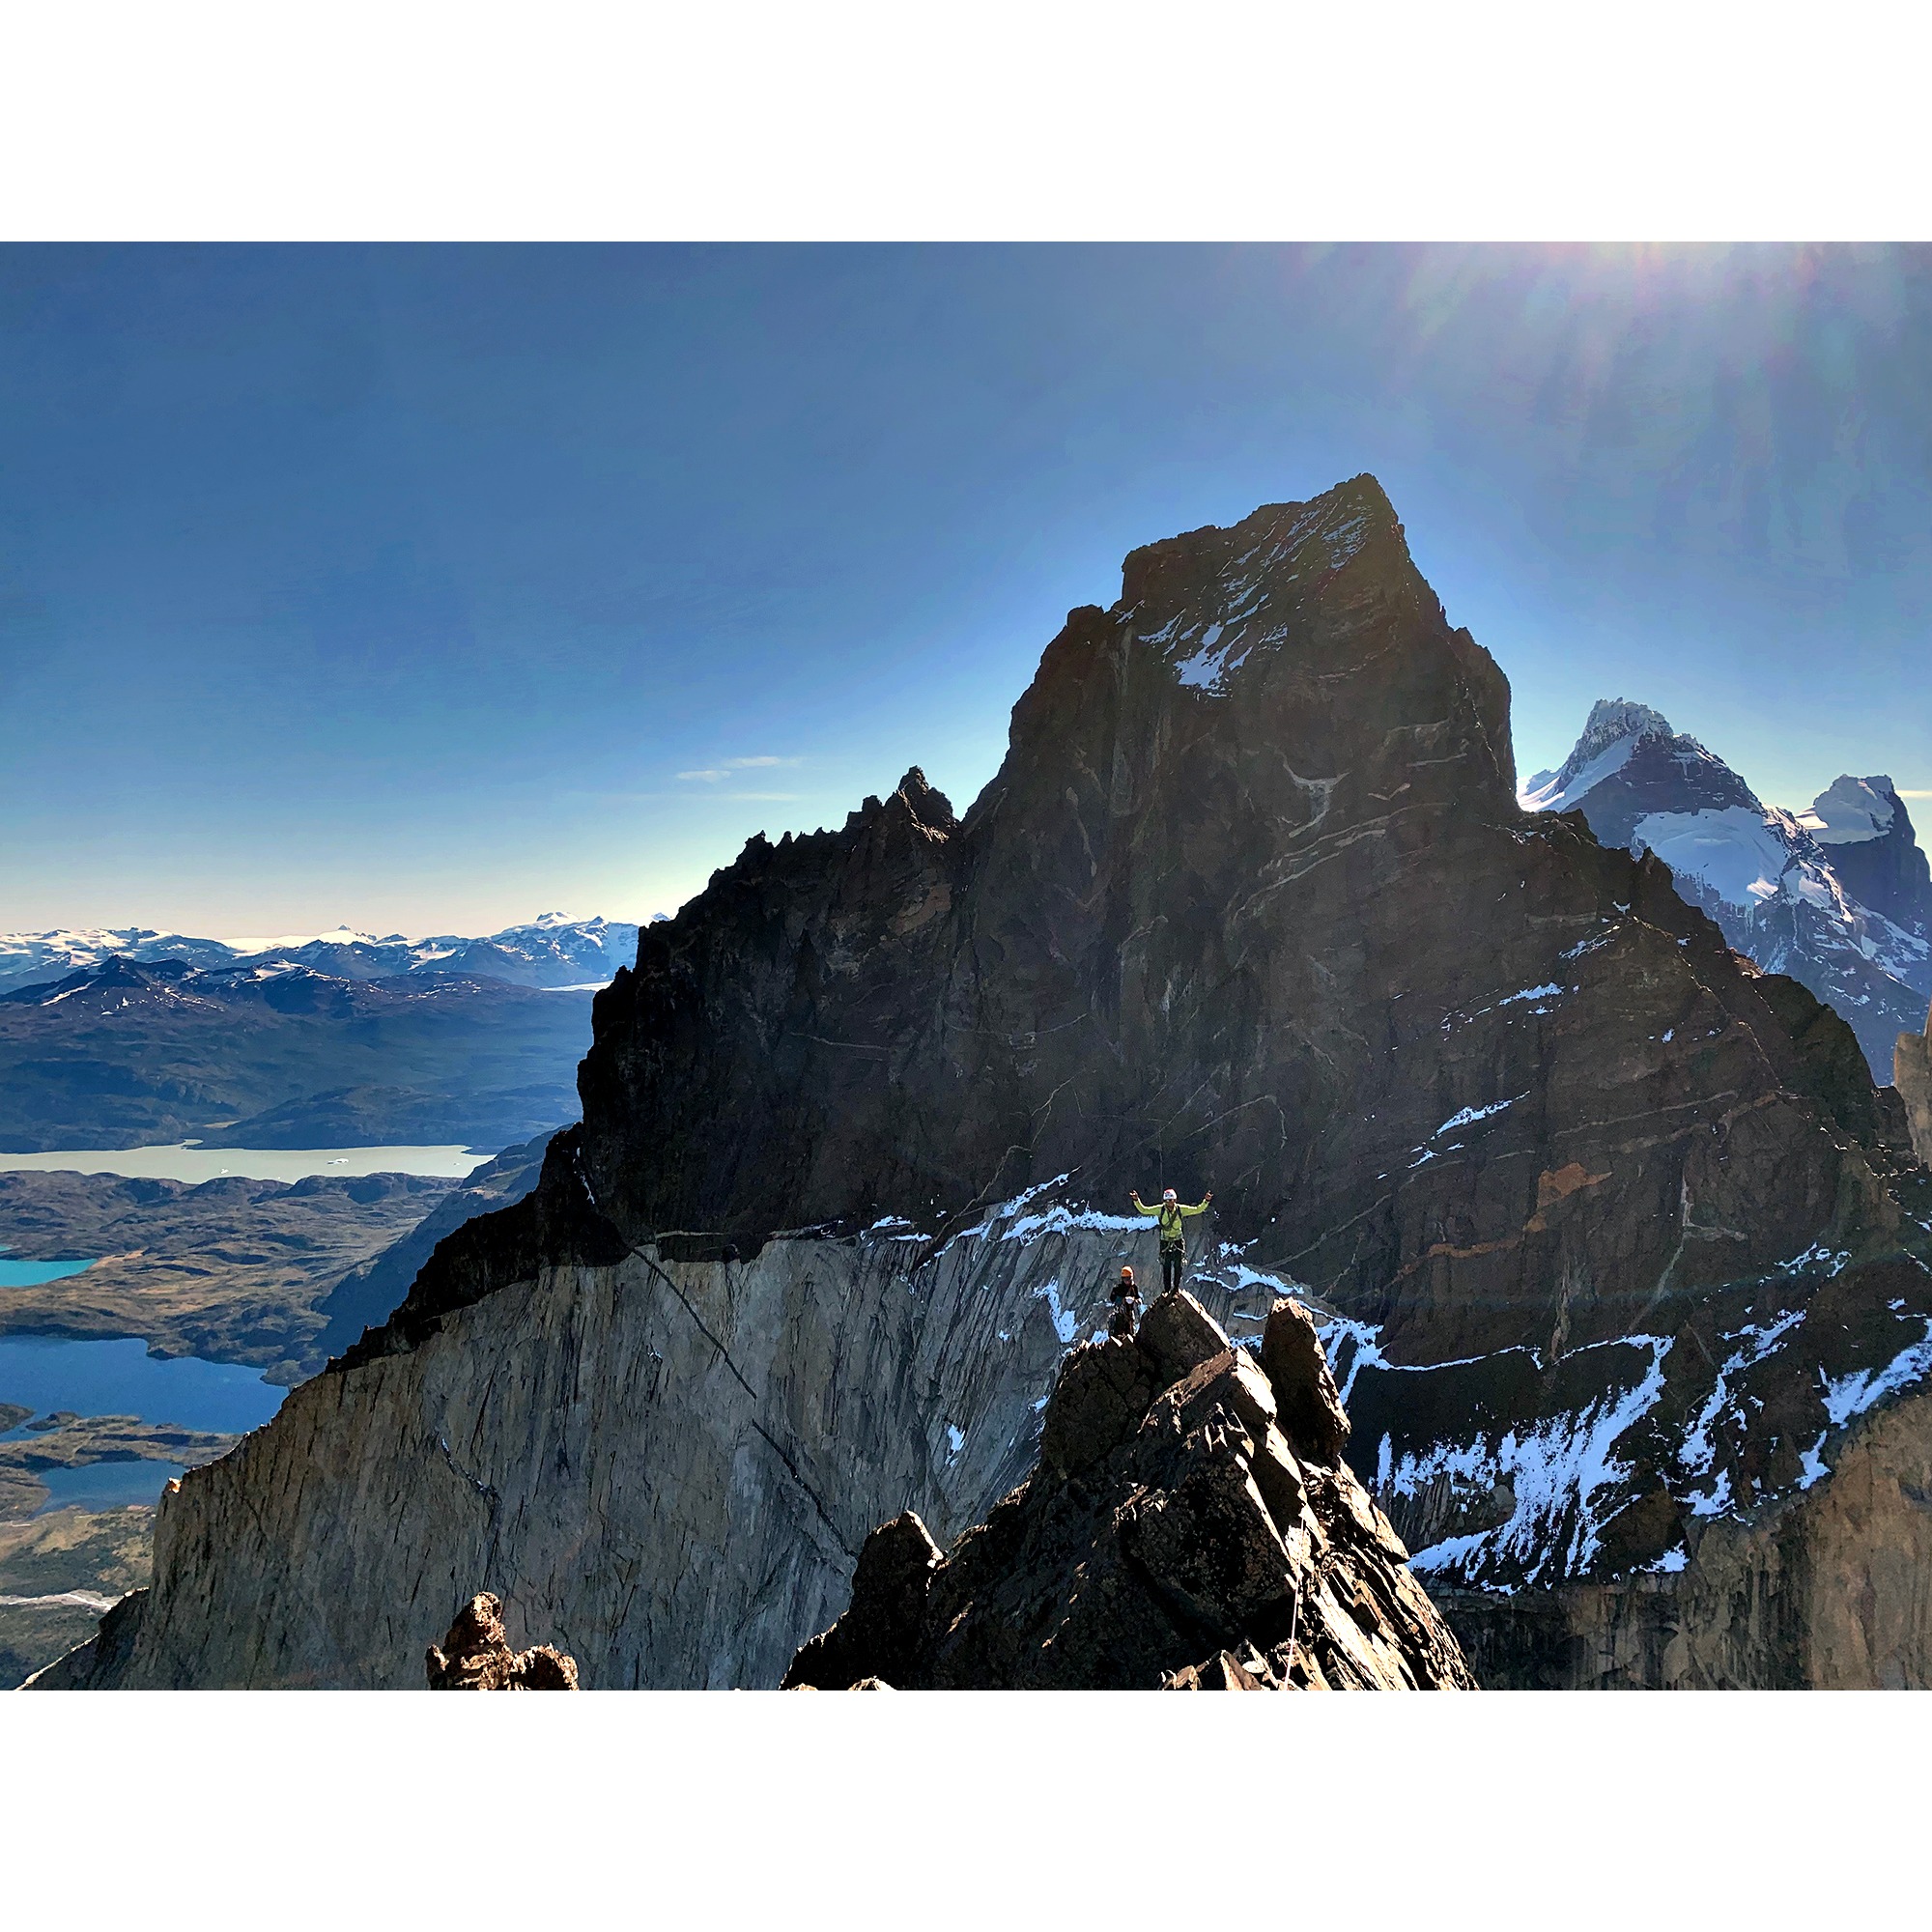 Первое восхождение по маршруту "Vacaciones Metamórficas" (600 метров, 5.11-) на вершину пика Куэрно Эсте (Cuerno Este) в горном массиве национального парка Торрес-дель-Пайне (Torres del Paine) в Чилийской Патагонии. Фото Patagonia Vertical